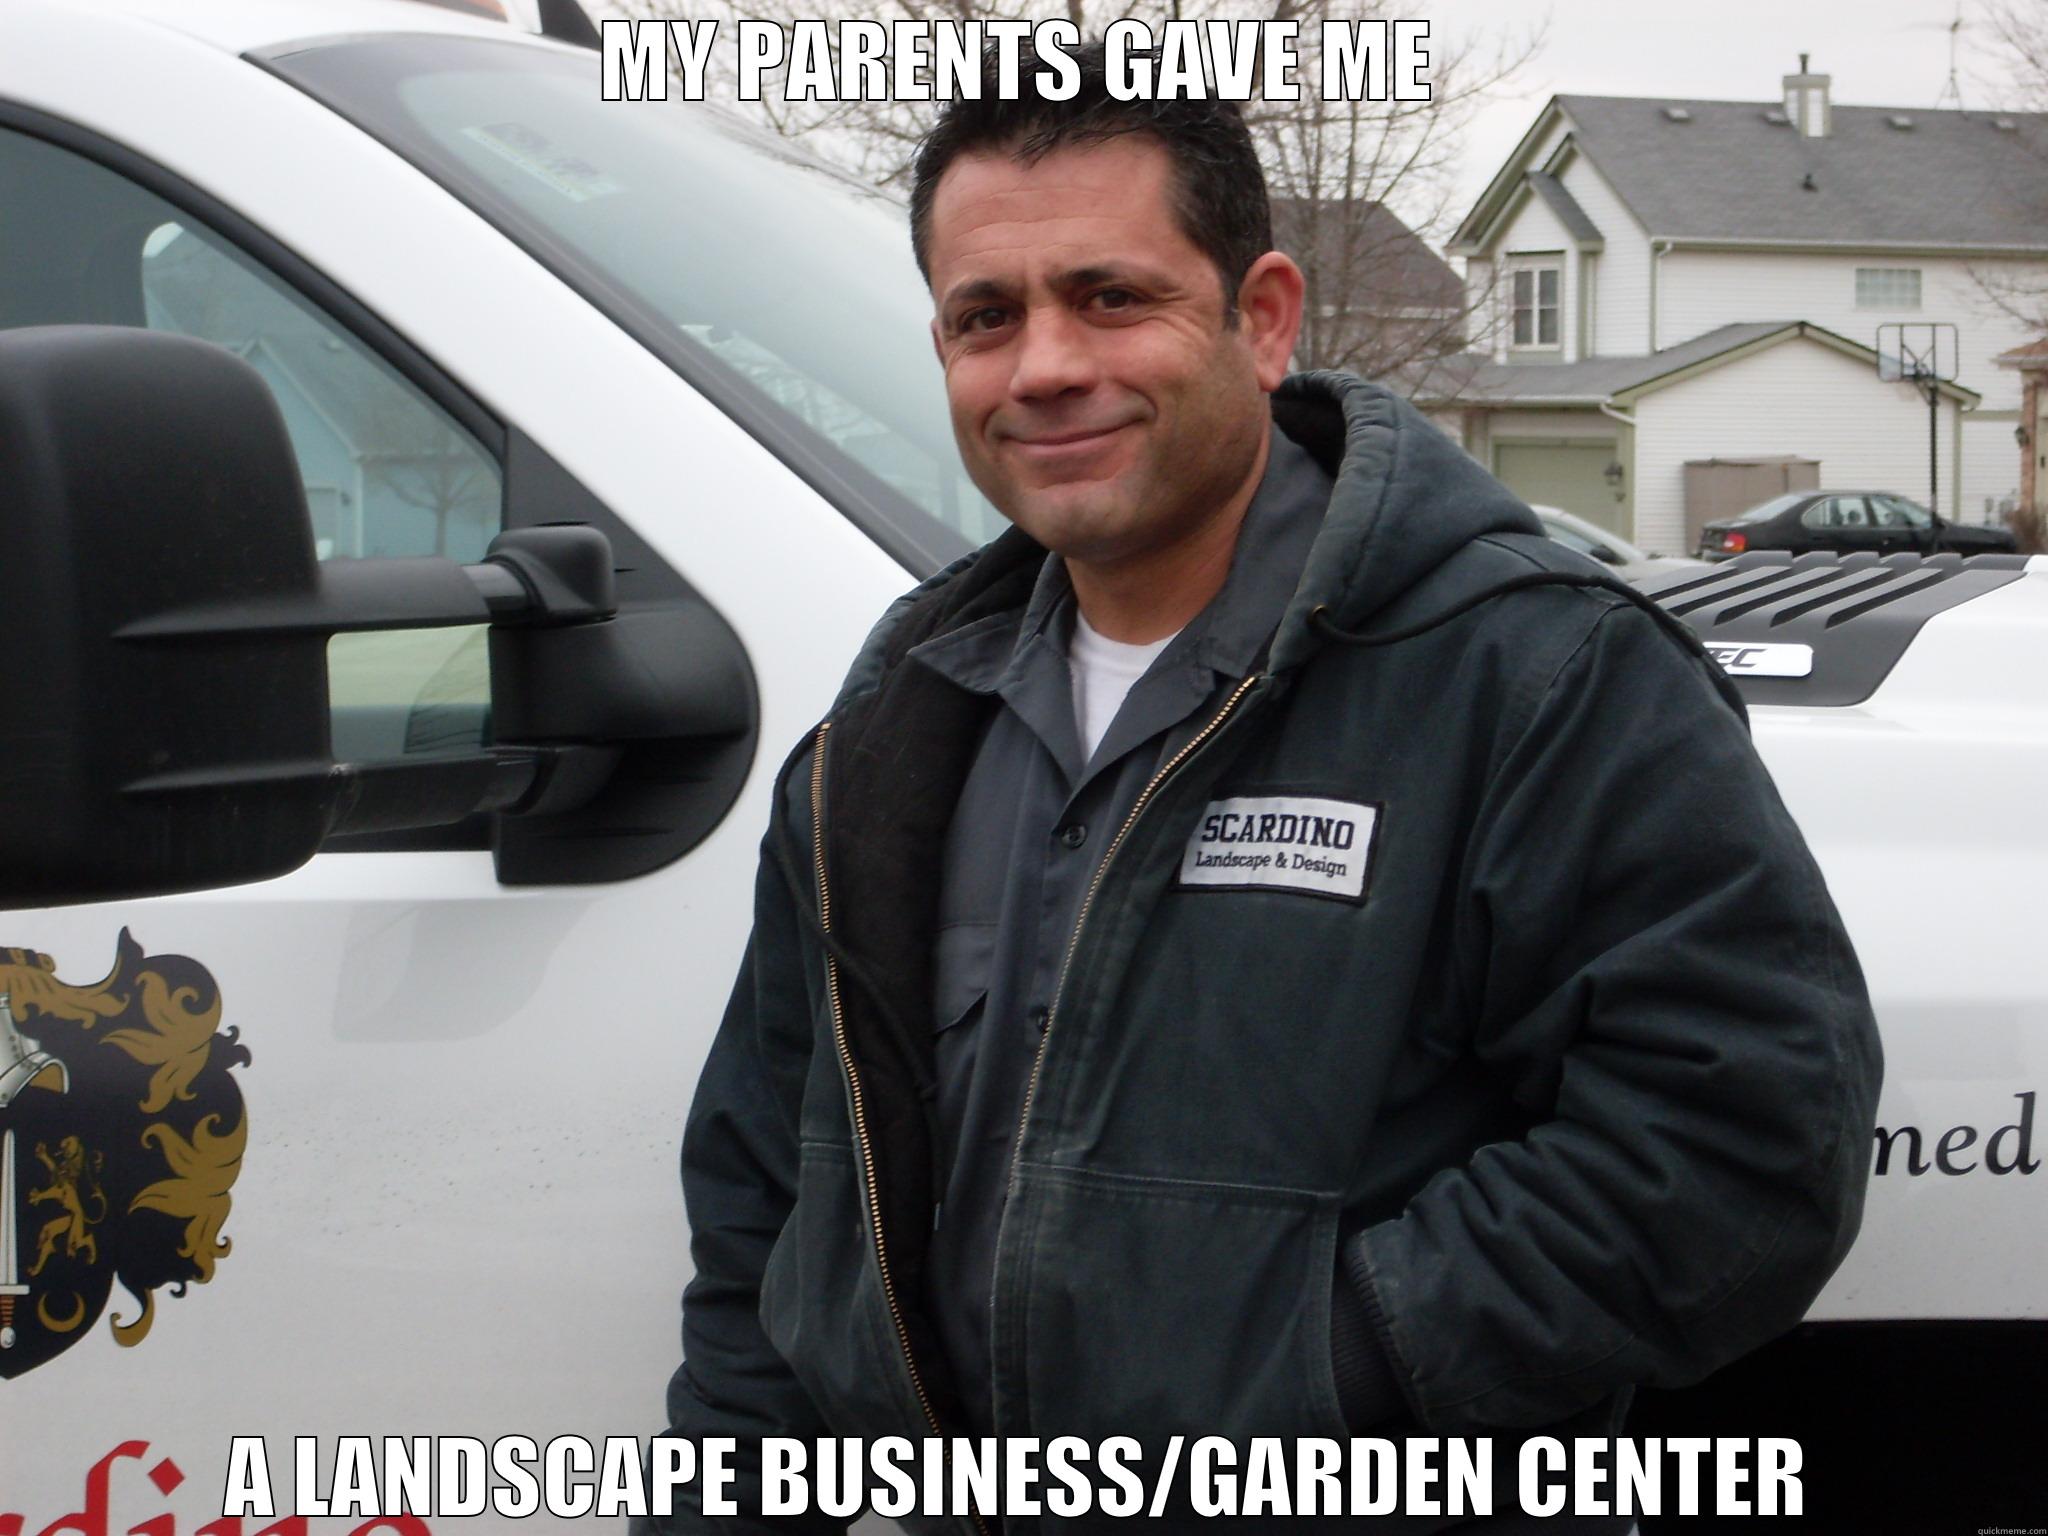 Horticulture Memes - MY PARENTS GAVE ME A LANDSCAPE BUSINESS/GARDEN CENTER Misc